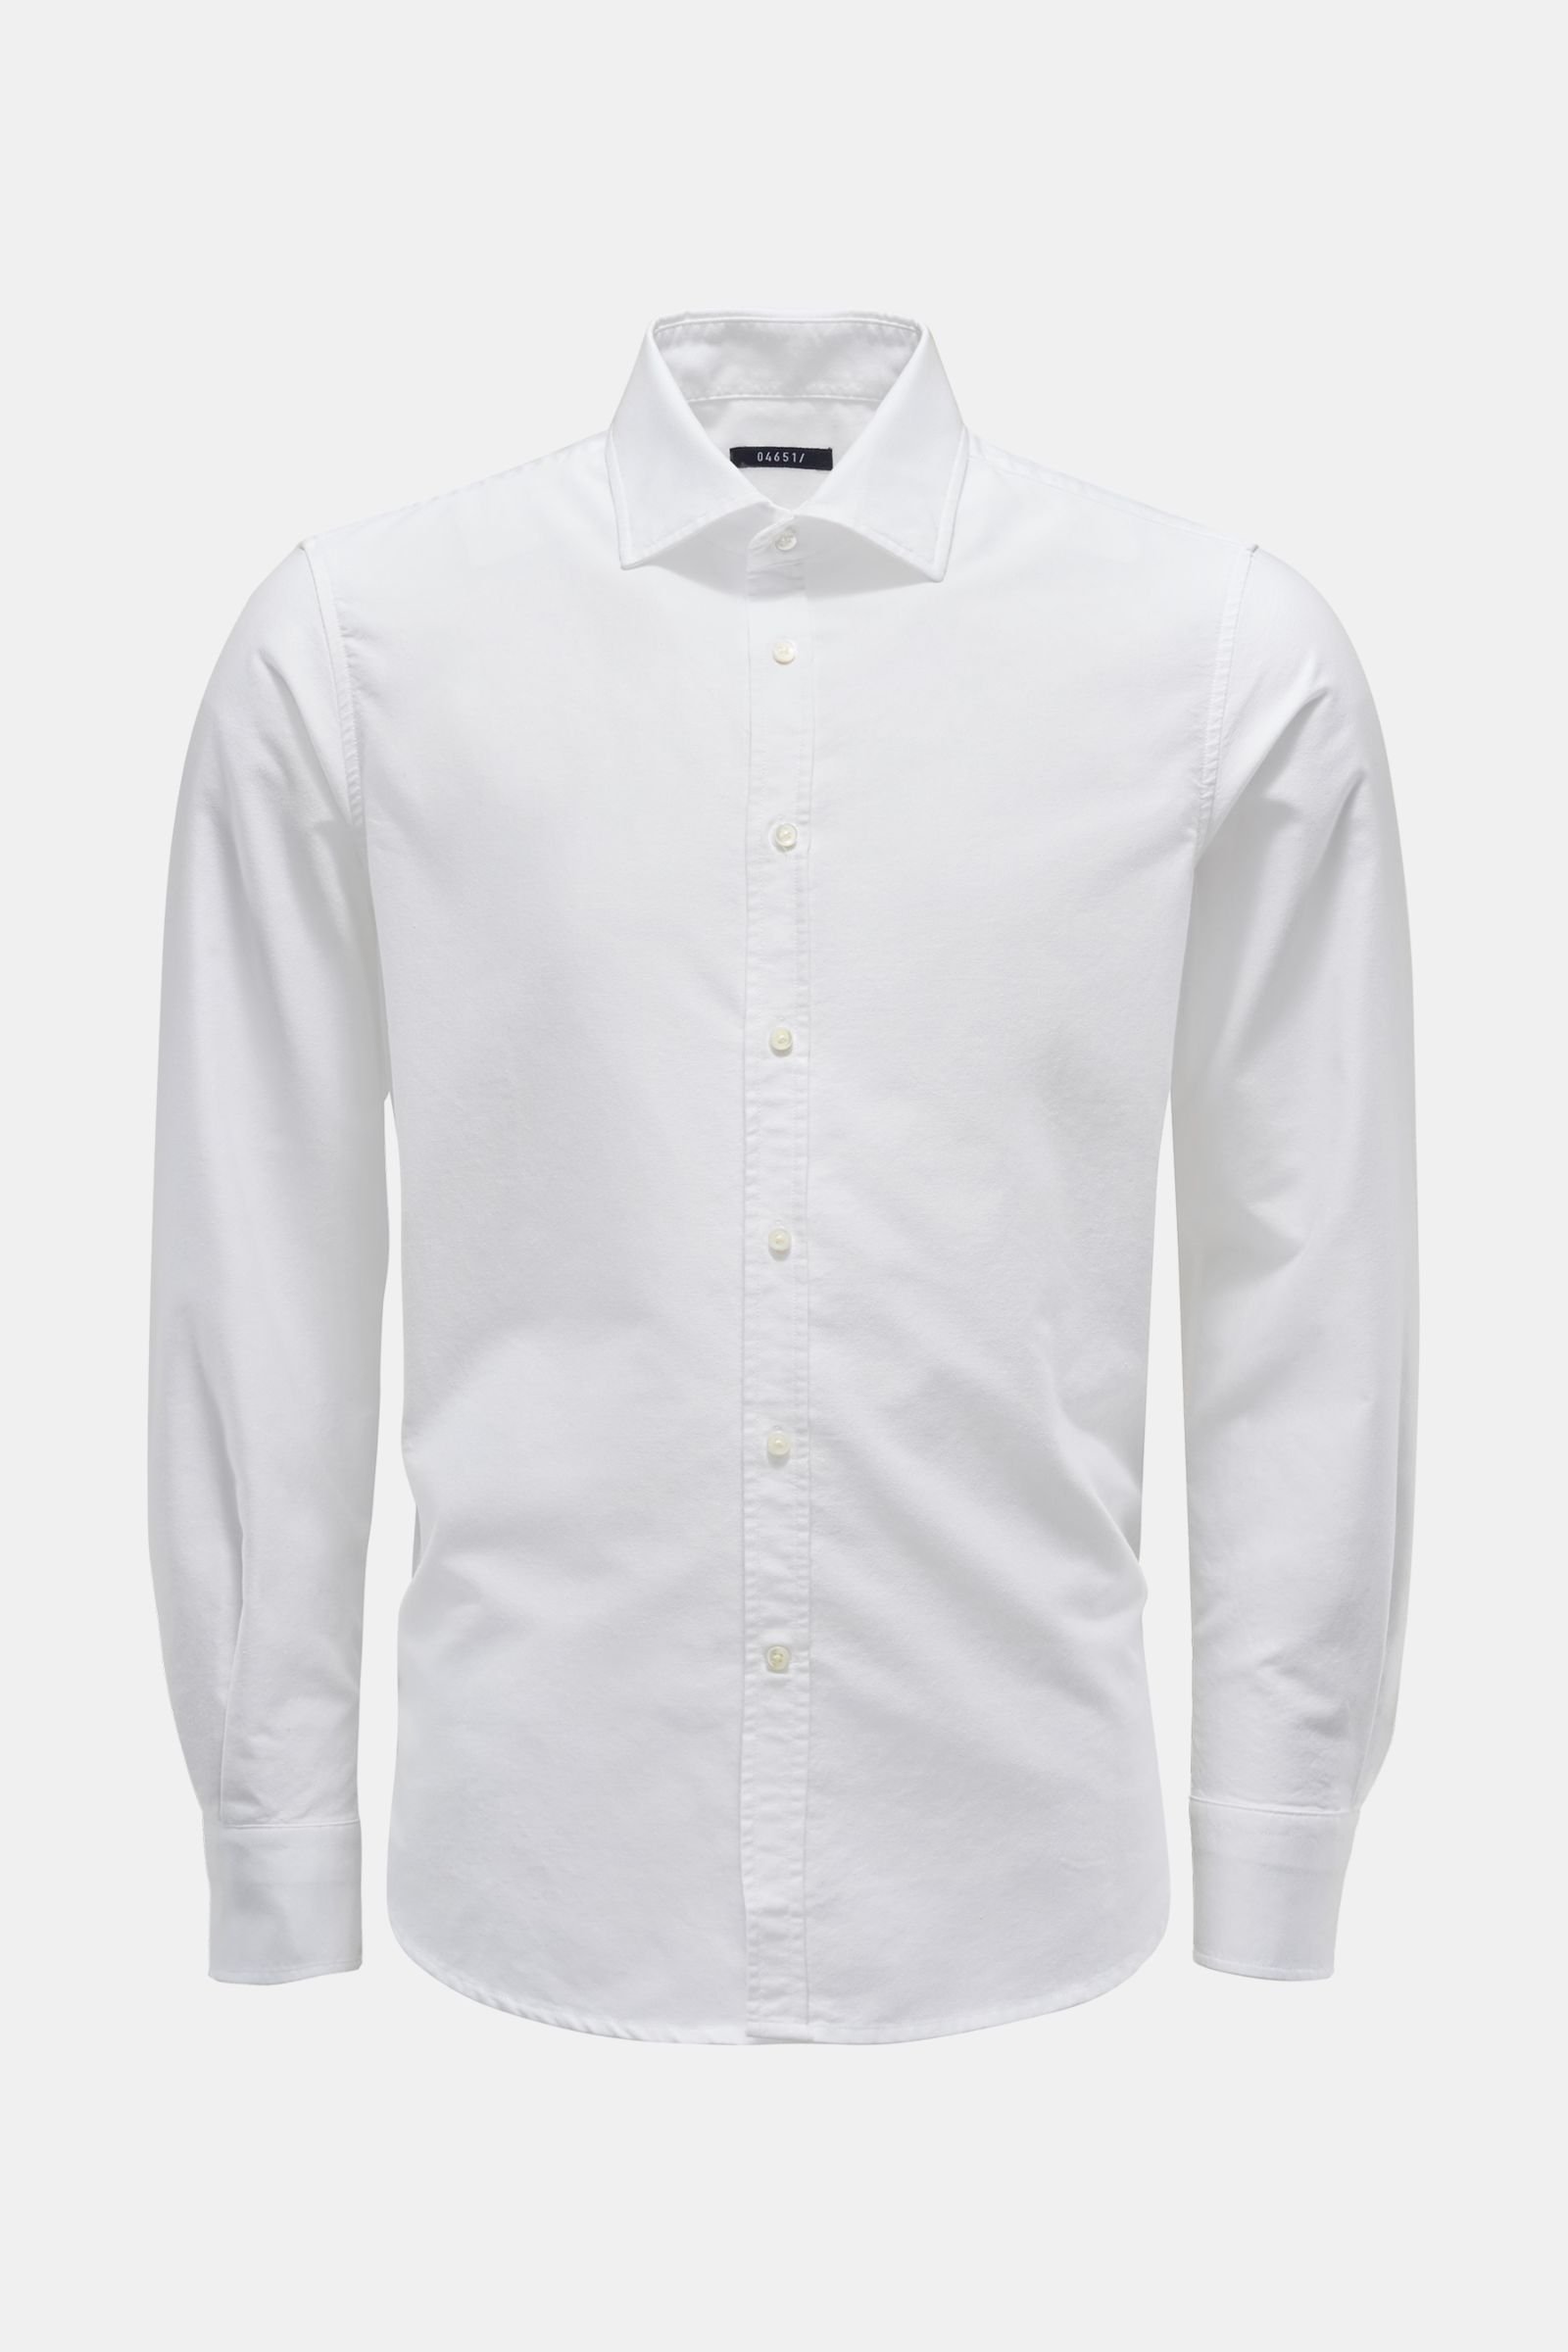 Oxford shirt 'Oxford Shirt' shark collar white